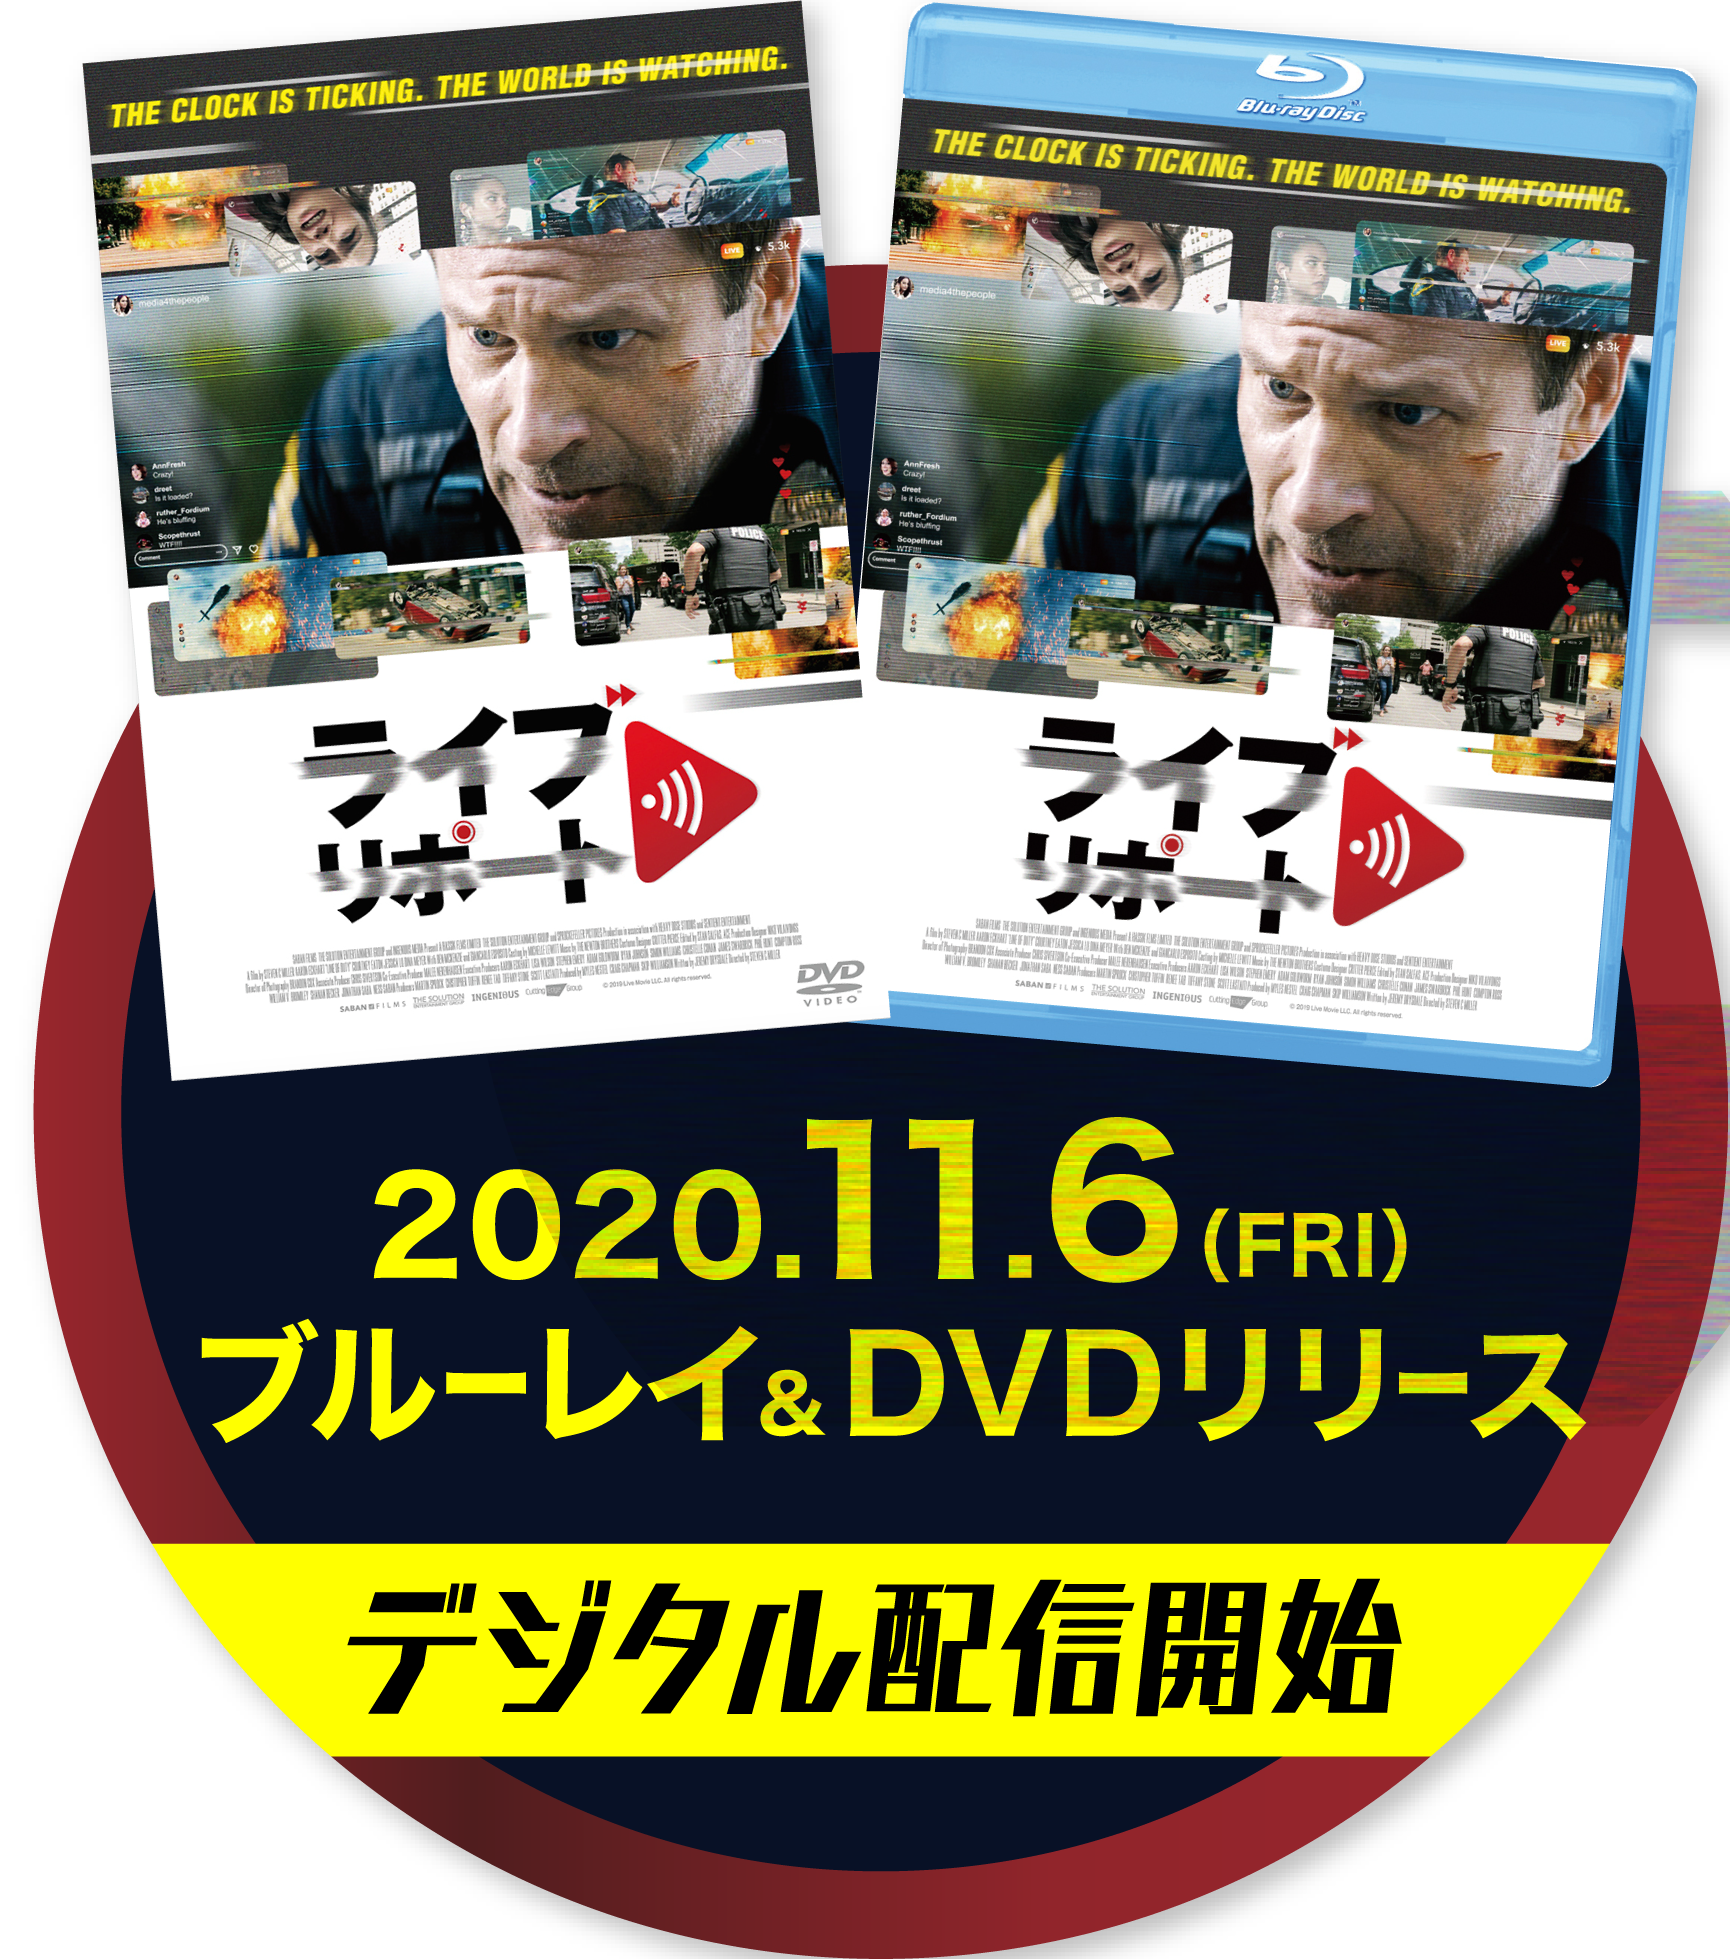 2020.11.6(FRI)ブルーレイ＆DVDリリース、デジタル配信開始